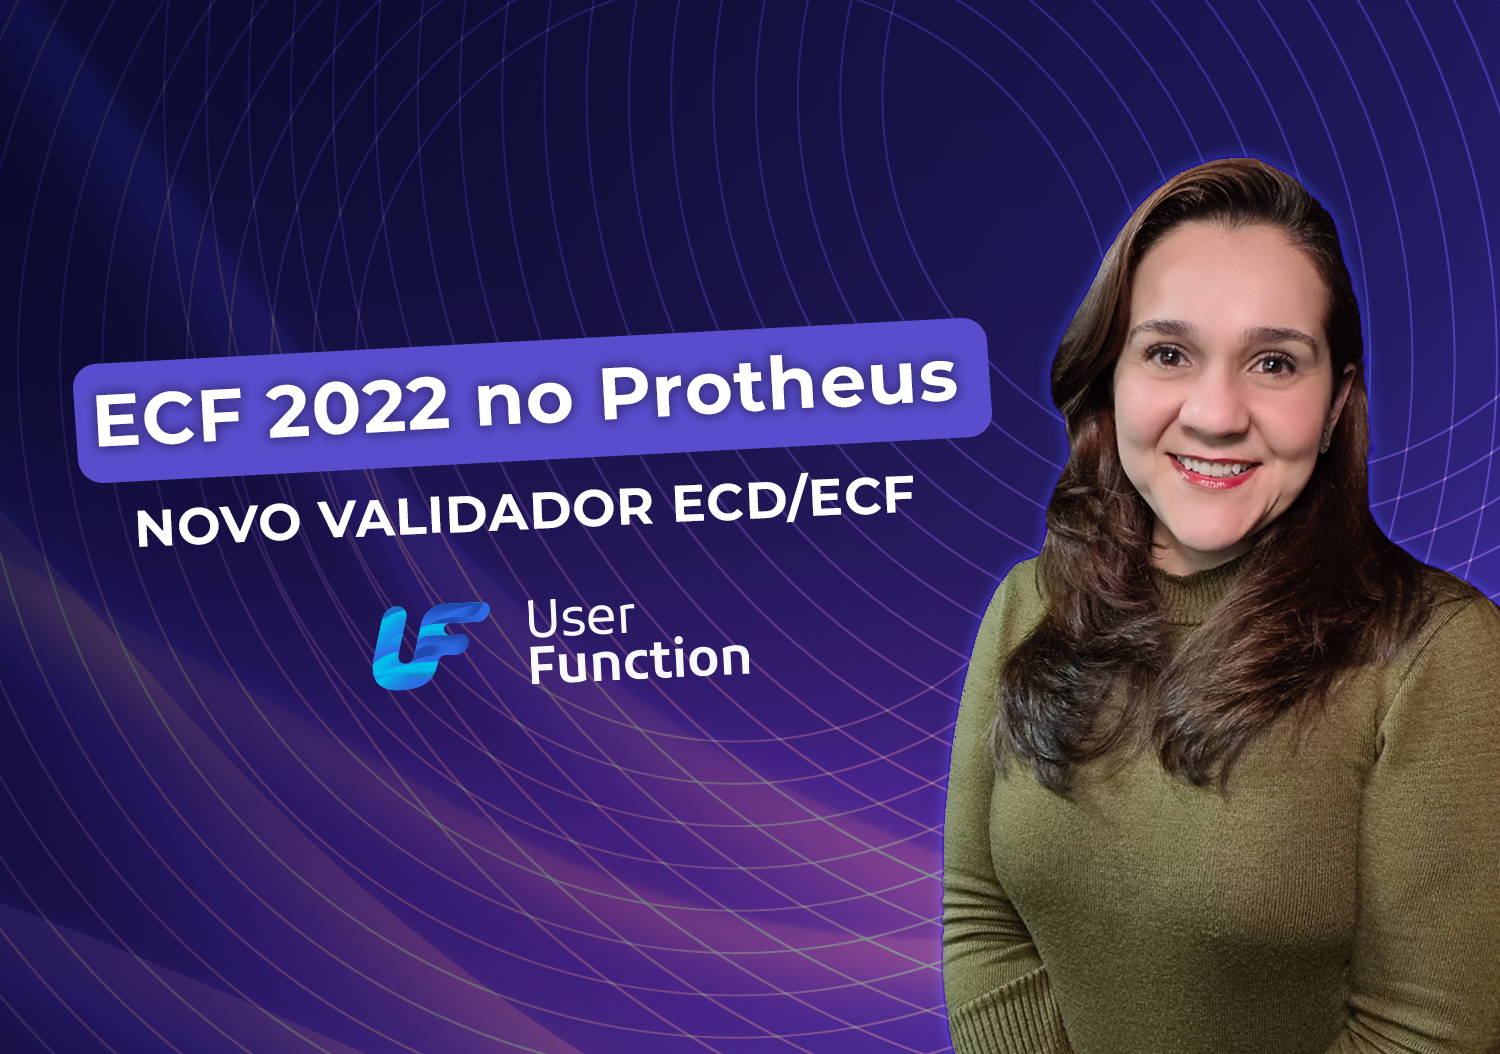 ECF 2022 no Protheus - Novo Validador ECD/ECF